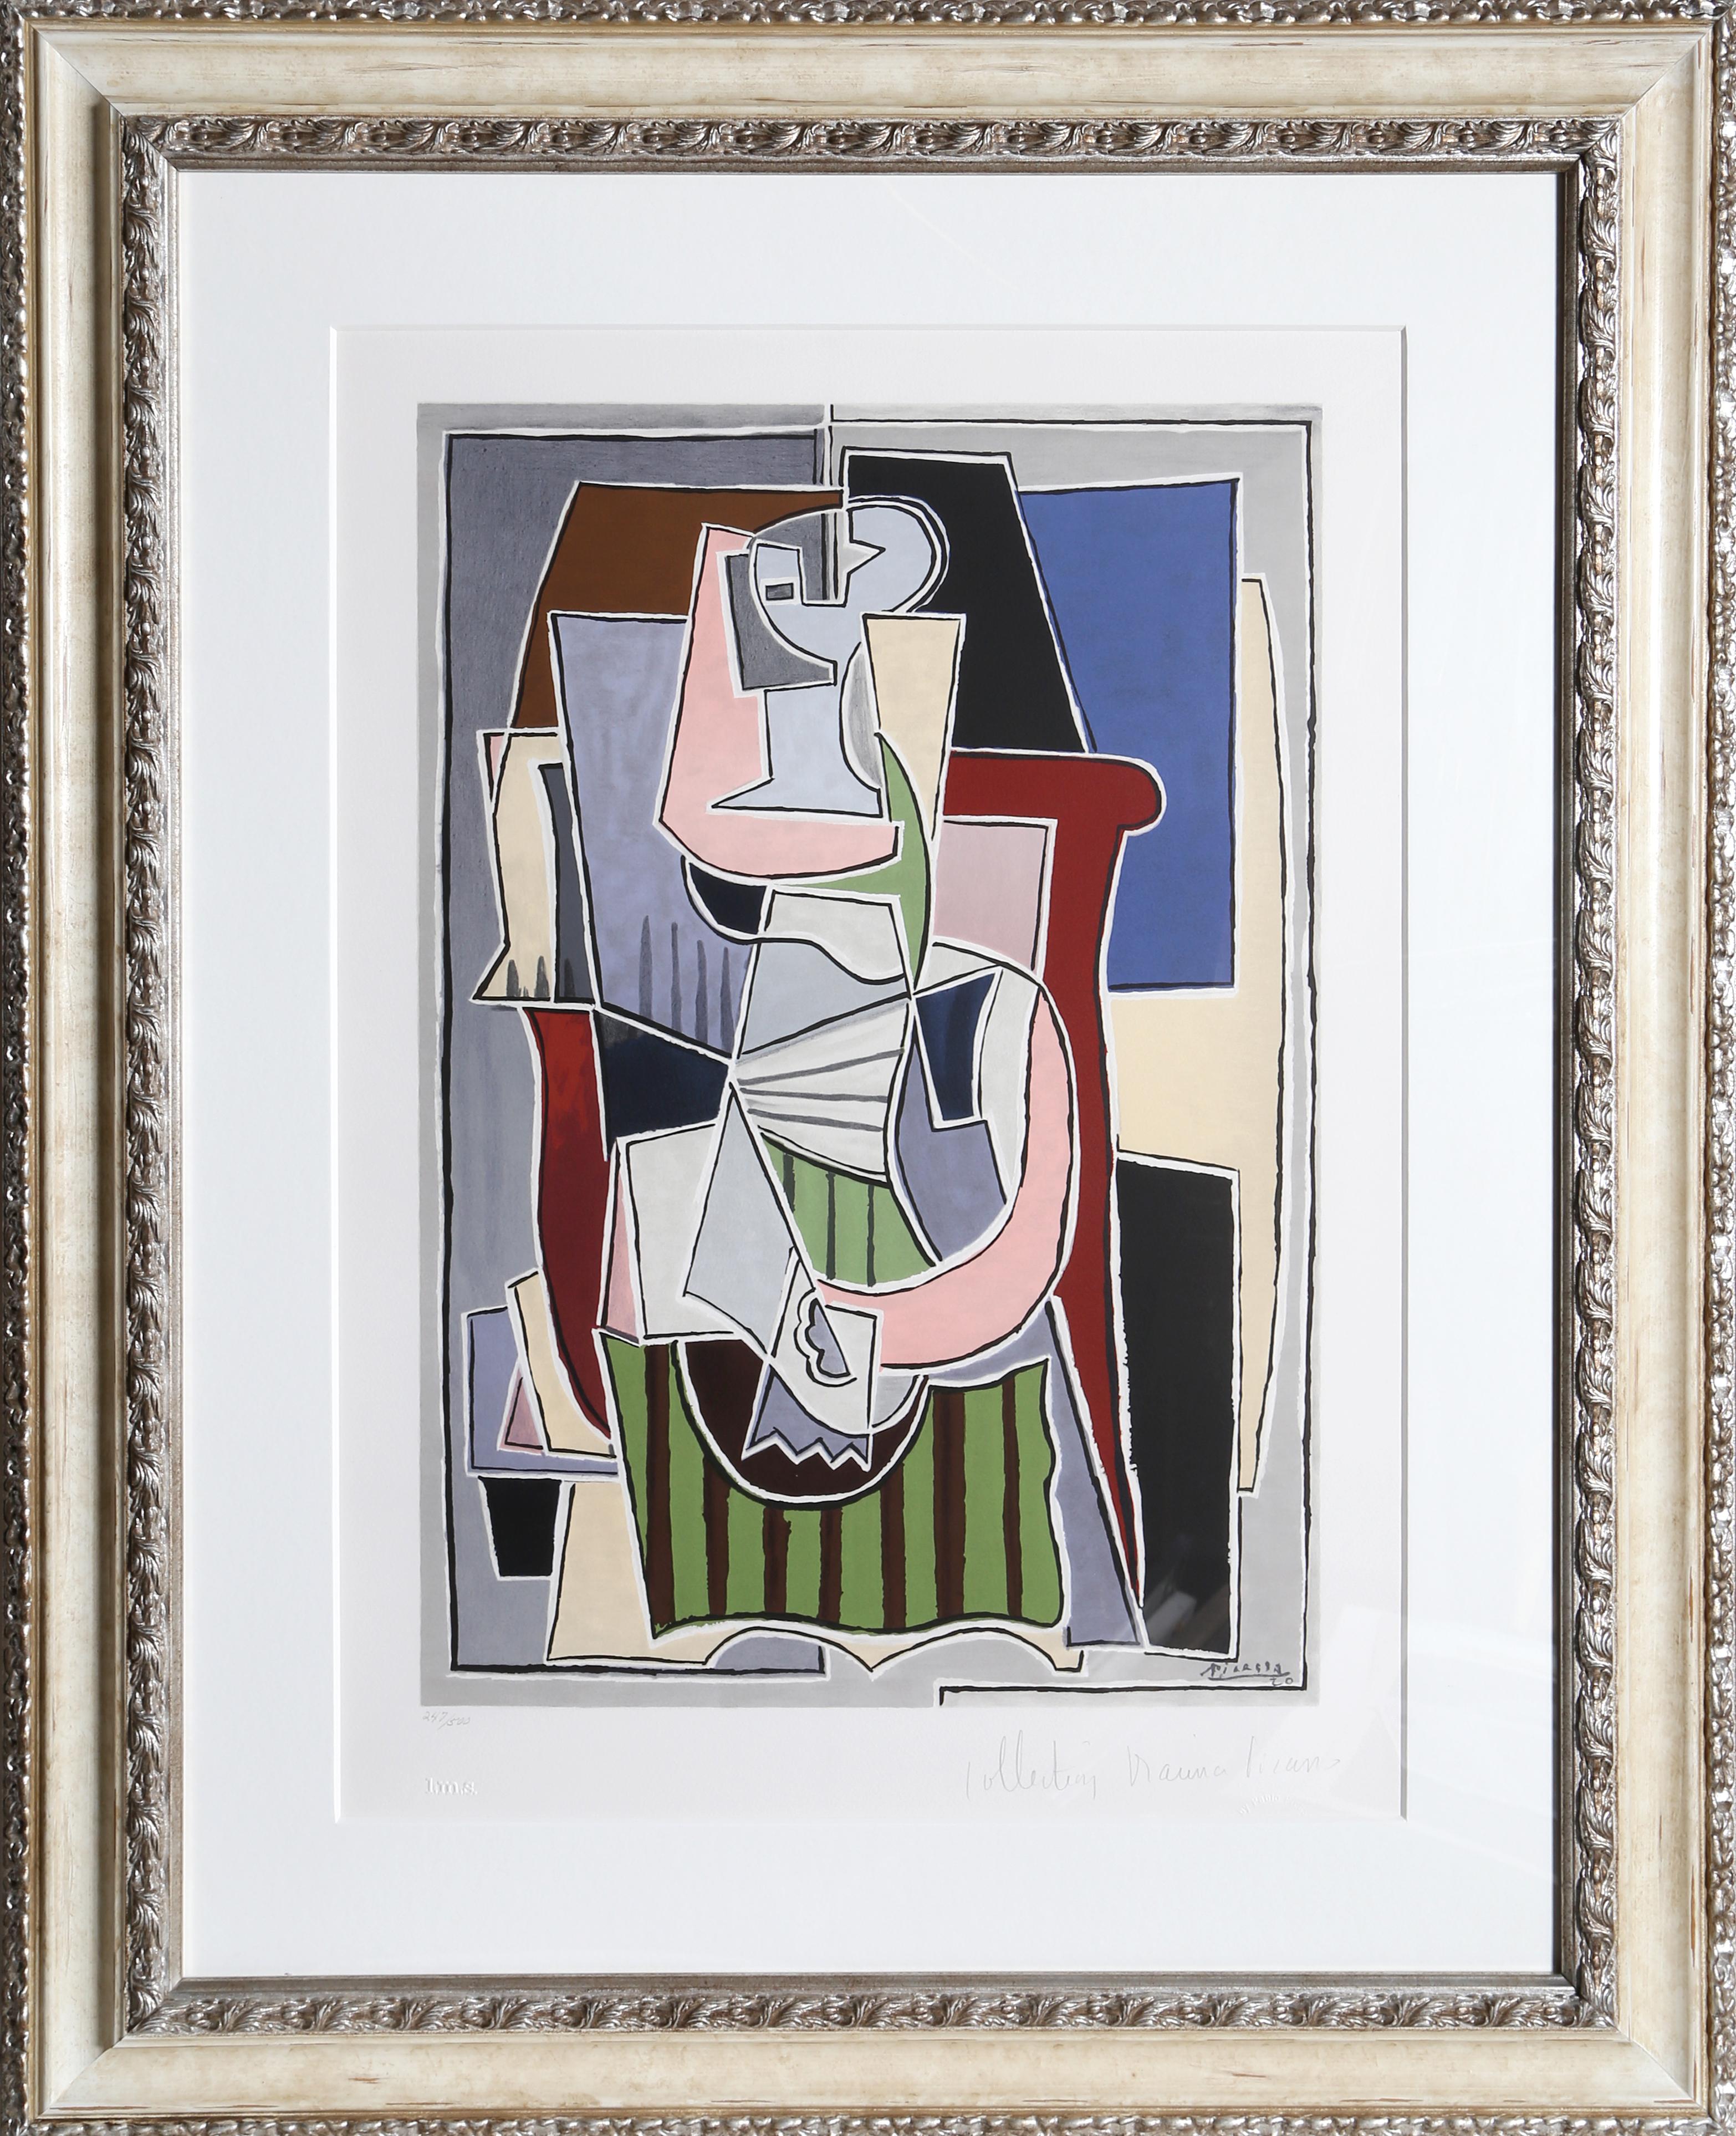 Die Frau mit der grünen Schürze auf diesem Druck von Pablo Picasso besteht aus kantigen Formen, die mit weißen und schwarzen Linien umrandet sind. Eine Lithographie aus der Nachlasssammlung Marina Picasso nach dem Gemälde "Femme au Tablier Rayer